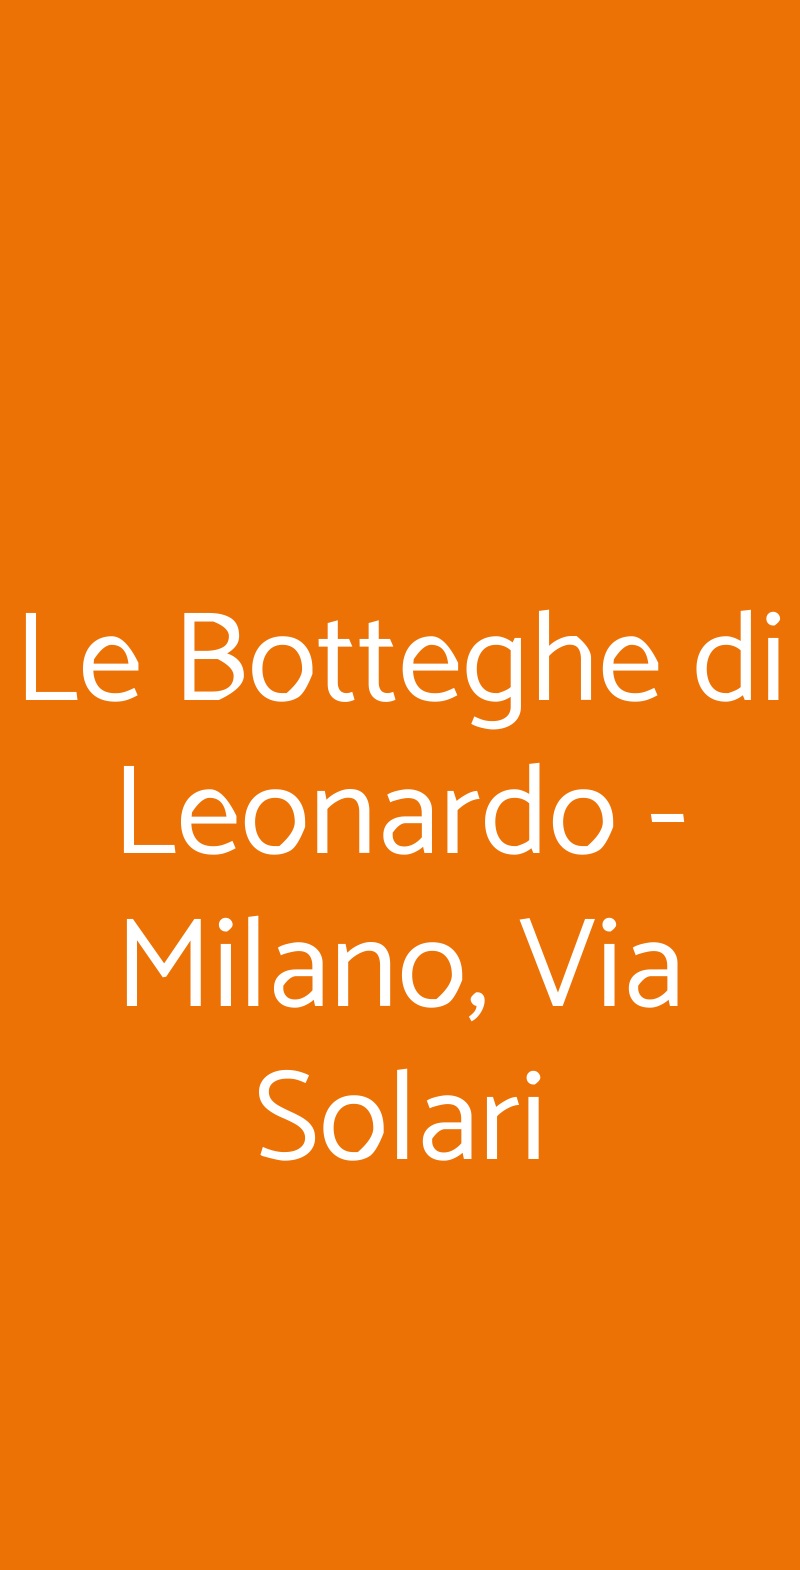 Le Botteghe di Leonardo - Milano, Via Solari Milano menù 1 pagina